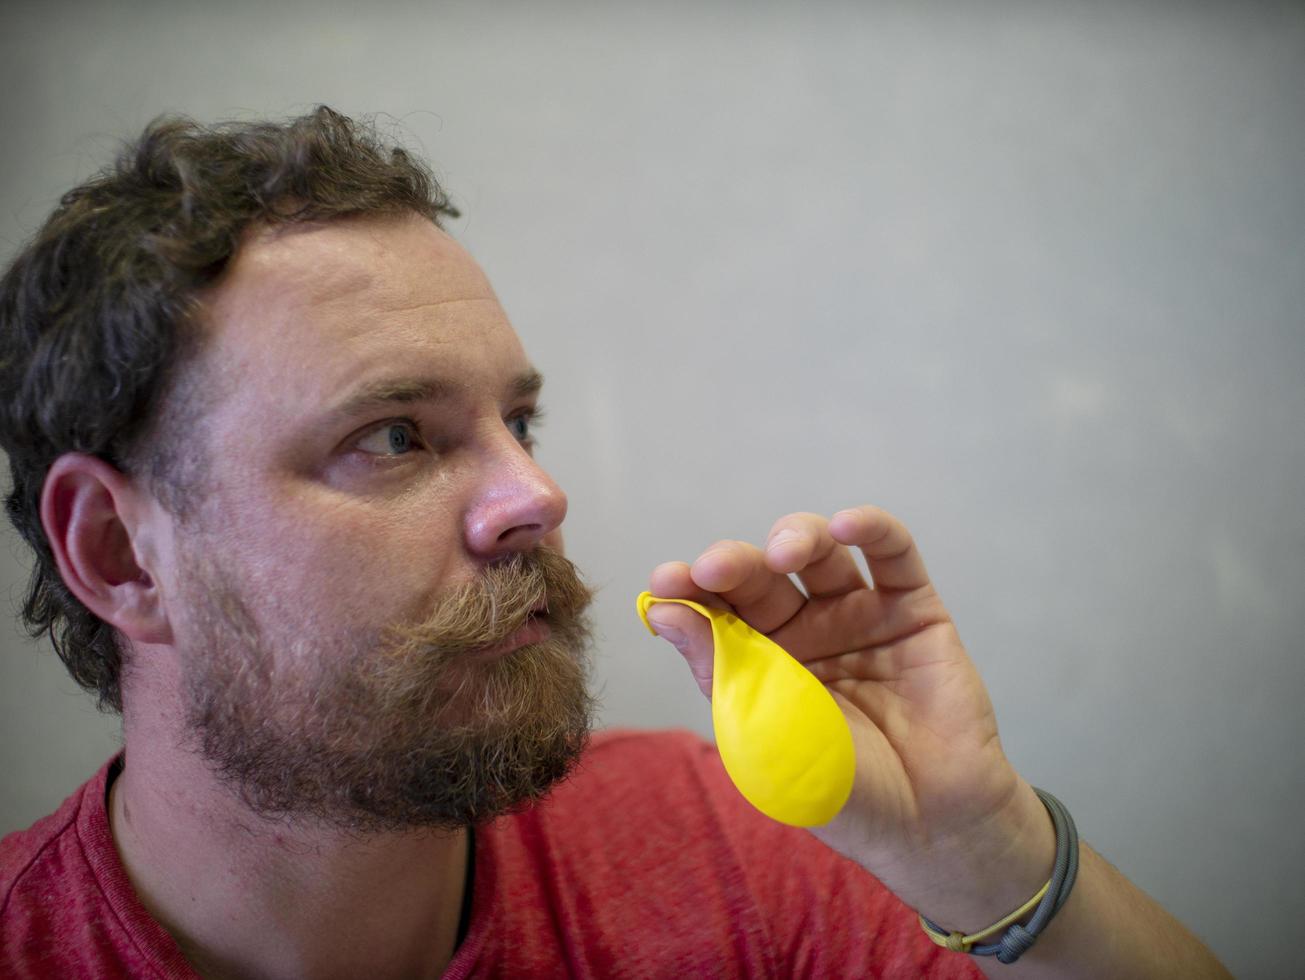 Mann mit Bart und Schnurrbart bereitet sich darauf vor, einen gelben Ballon aufzublasen foto